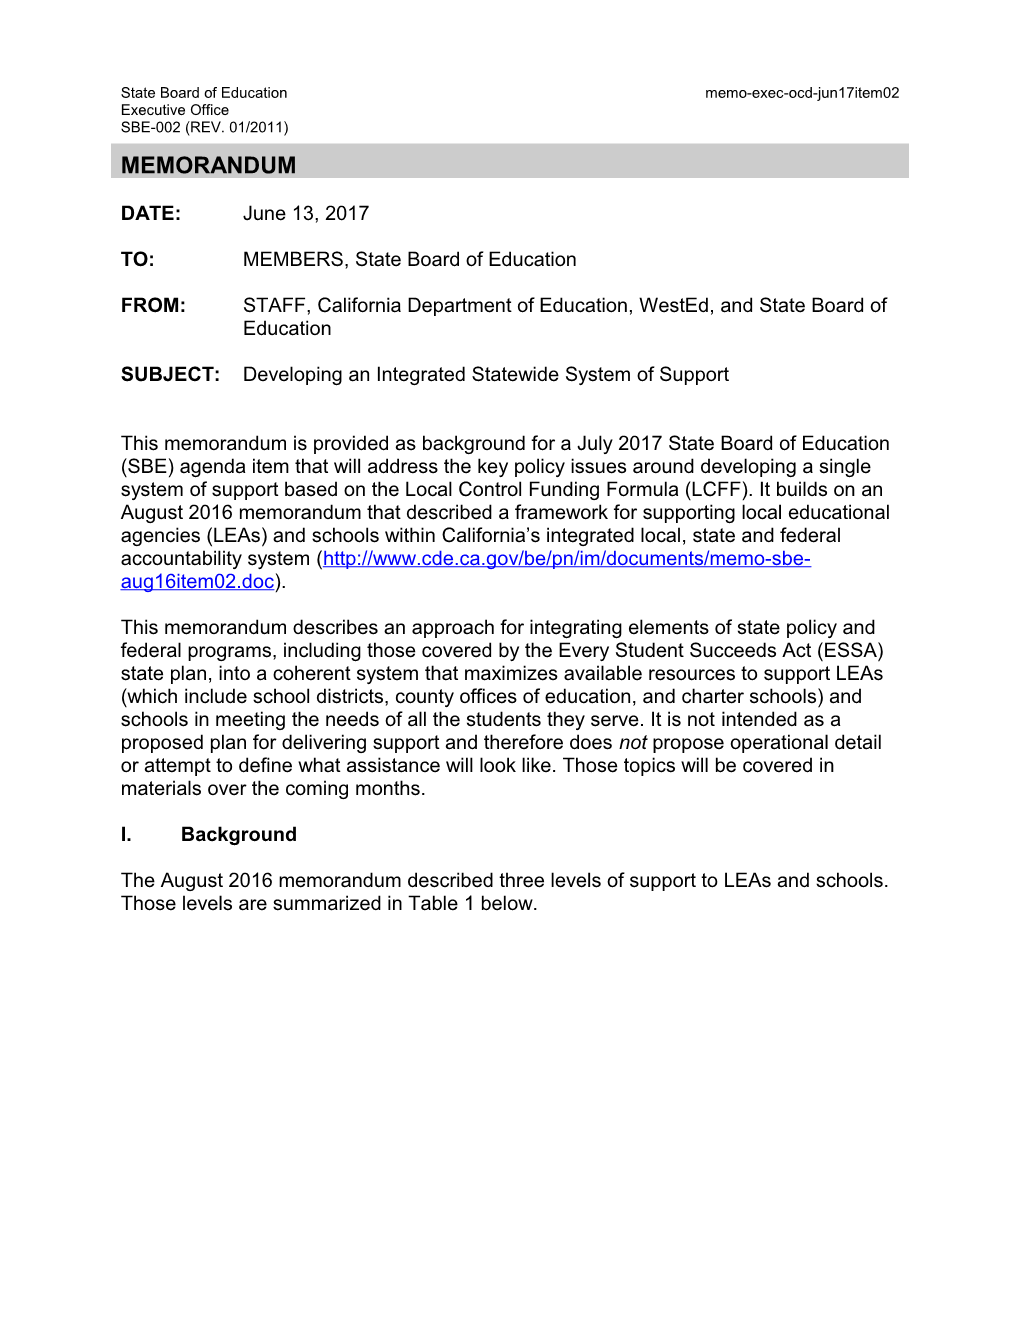 June 2017 Memo OCD Item 02 - Information Memorandum (CA State Board of Education)